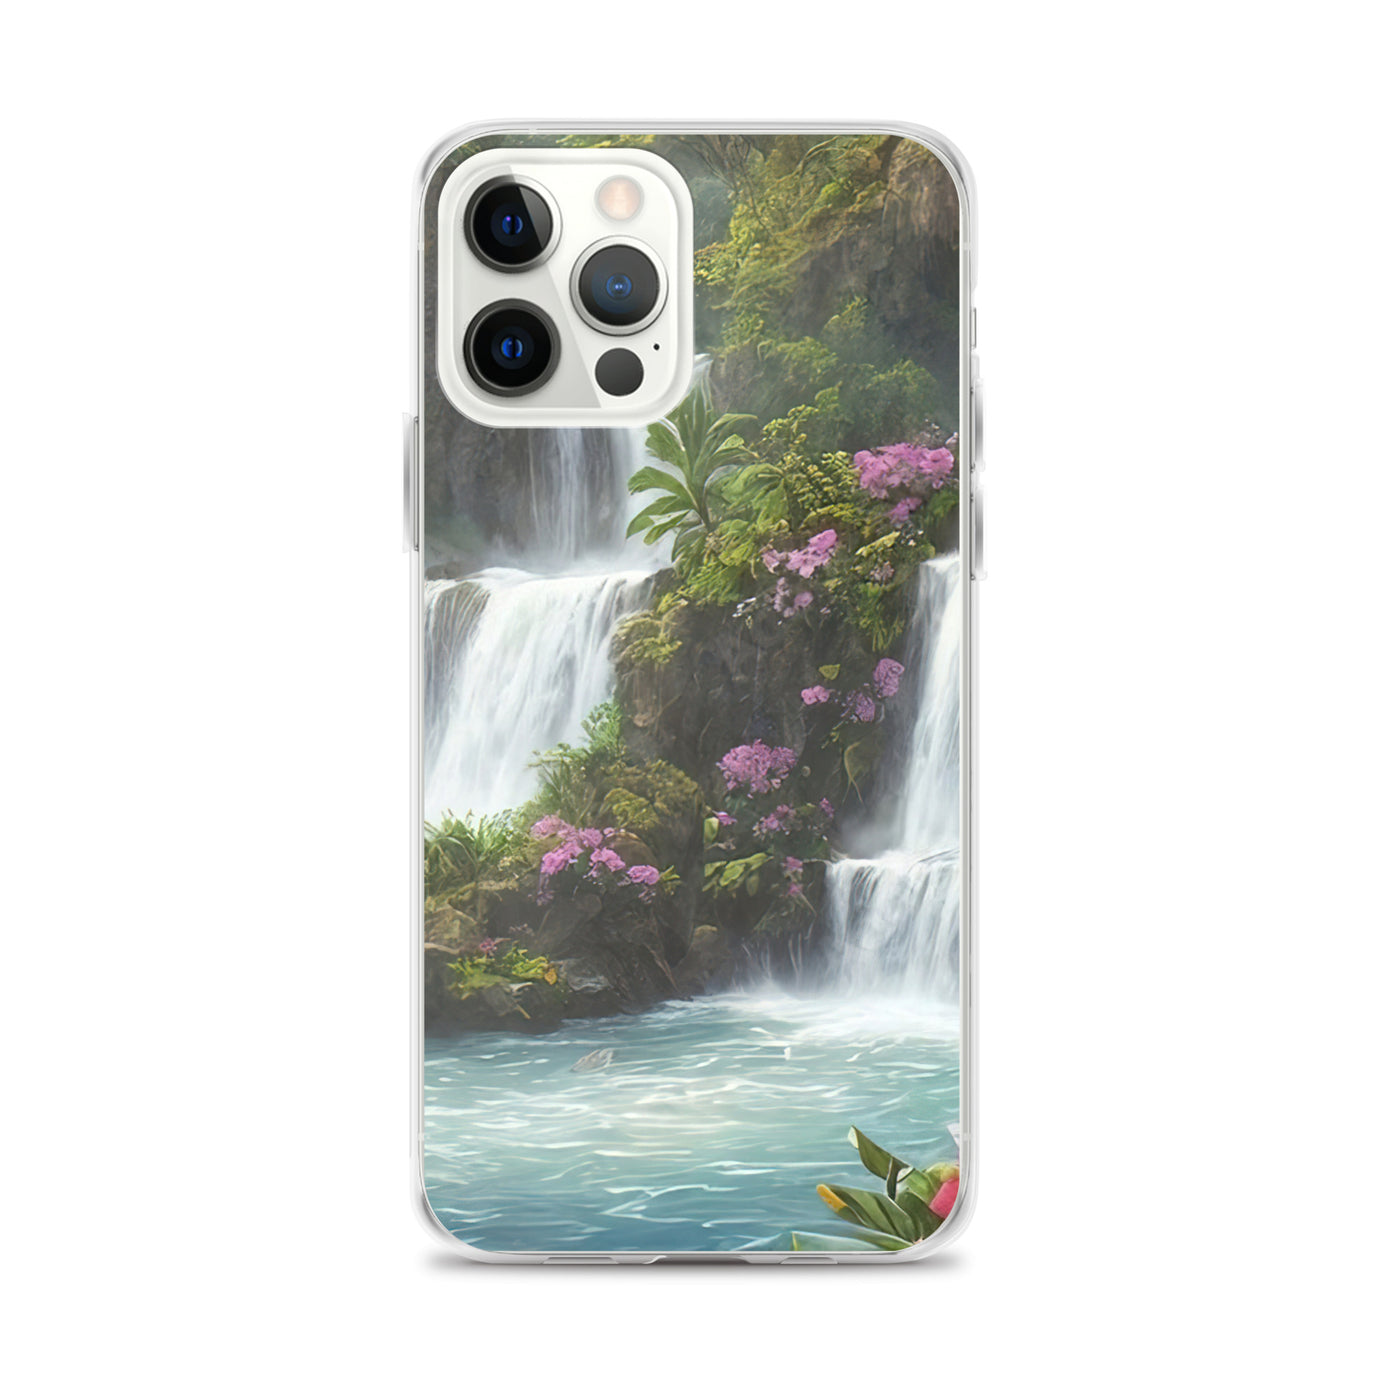 Wasserfall im Wald und Blumen - Schöne Malerei - iPhone Schutzhülle (durchsichtig) camping xxx iPhone 12 Pro Max